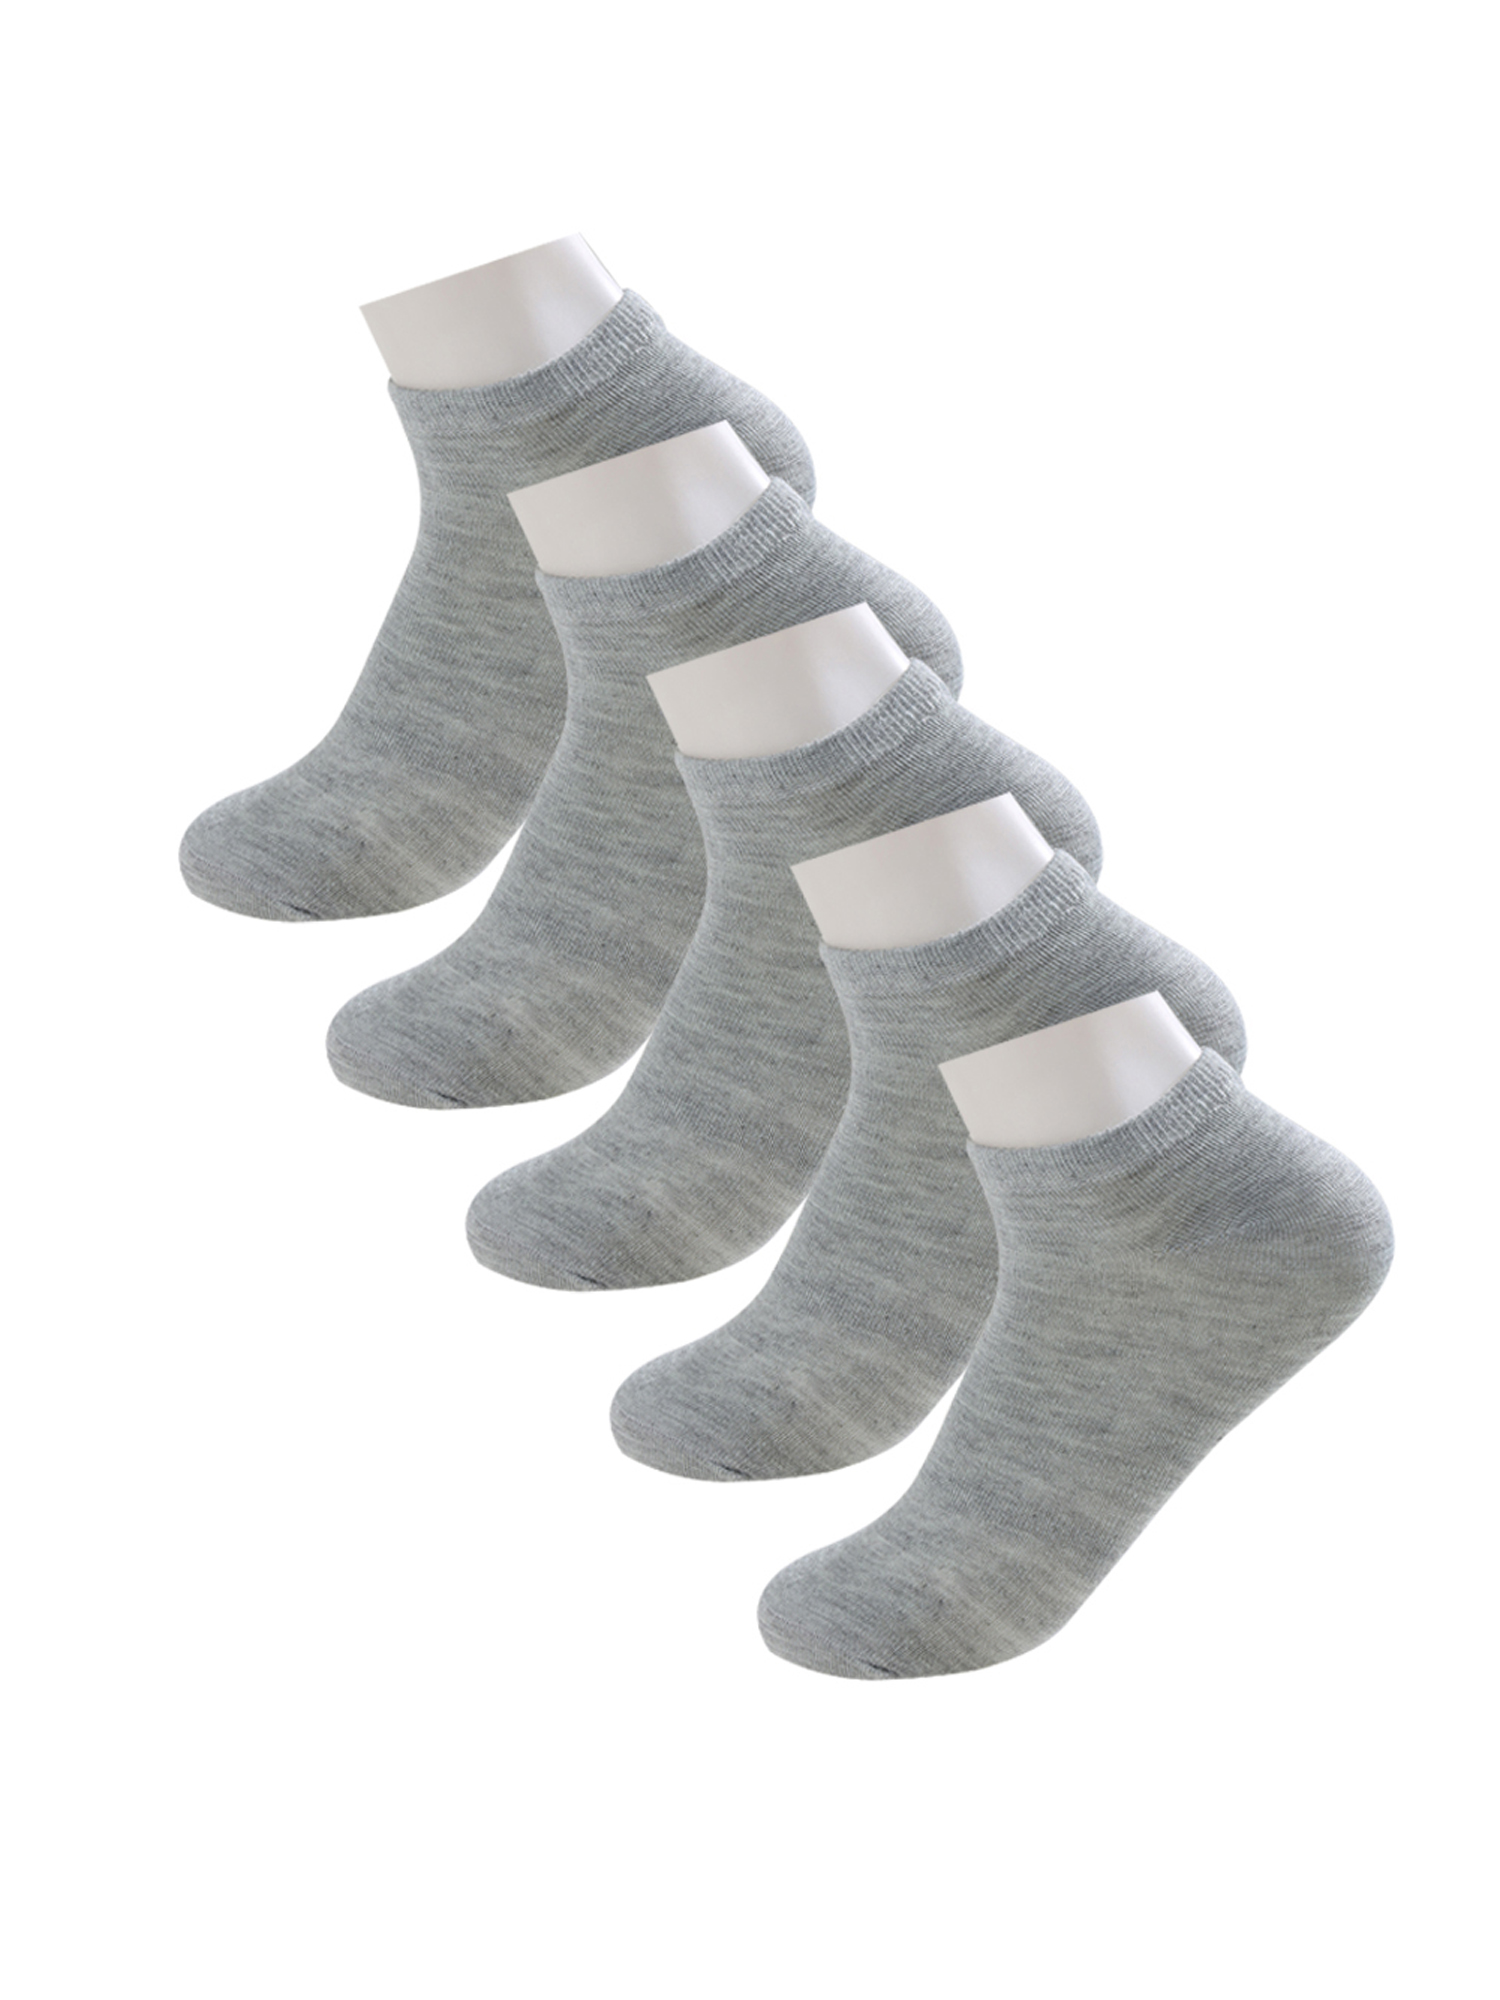 Unique Bargains Soft Cotton Athletic Ankle Socks 5-Pack (Junior & Women's) - image 3 of 7